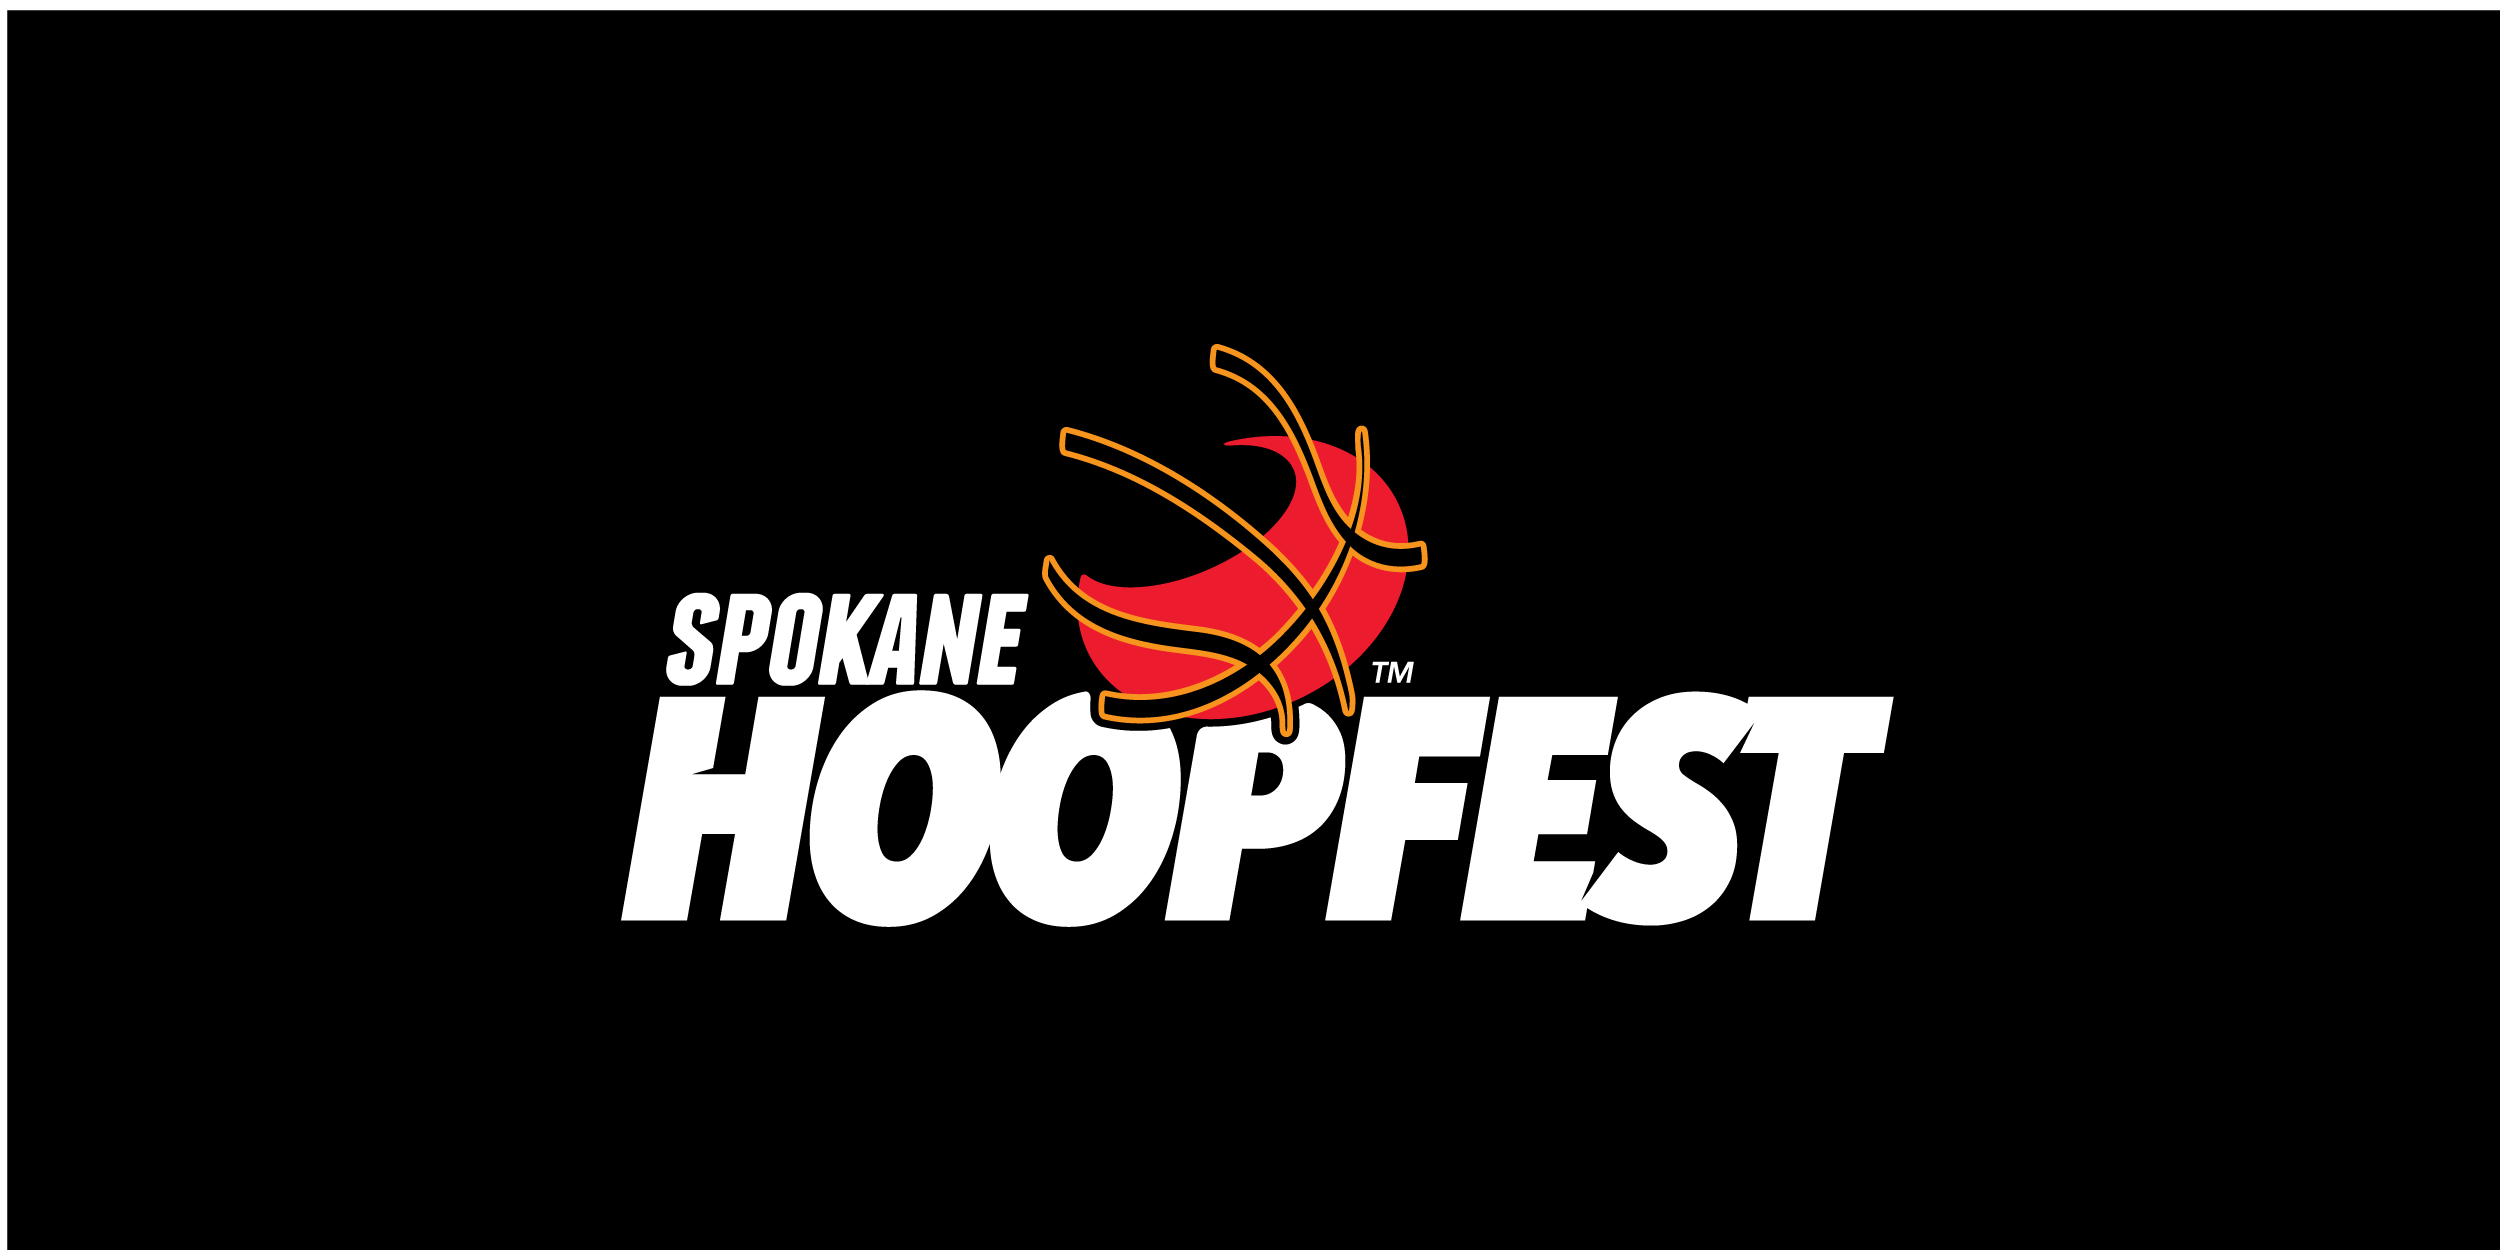 Spokane HOopfest